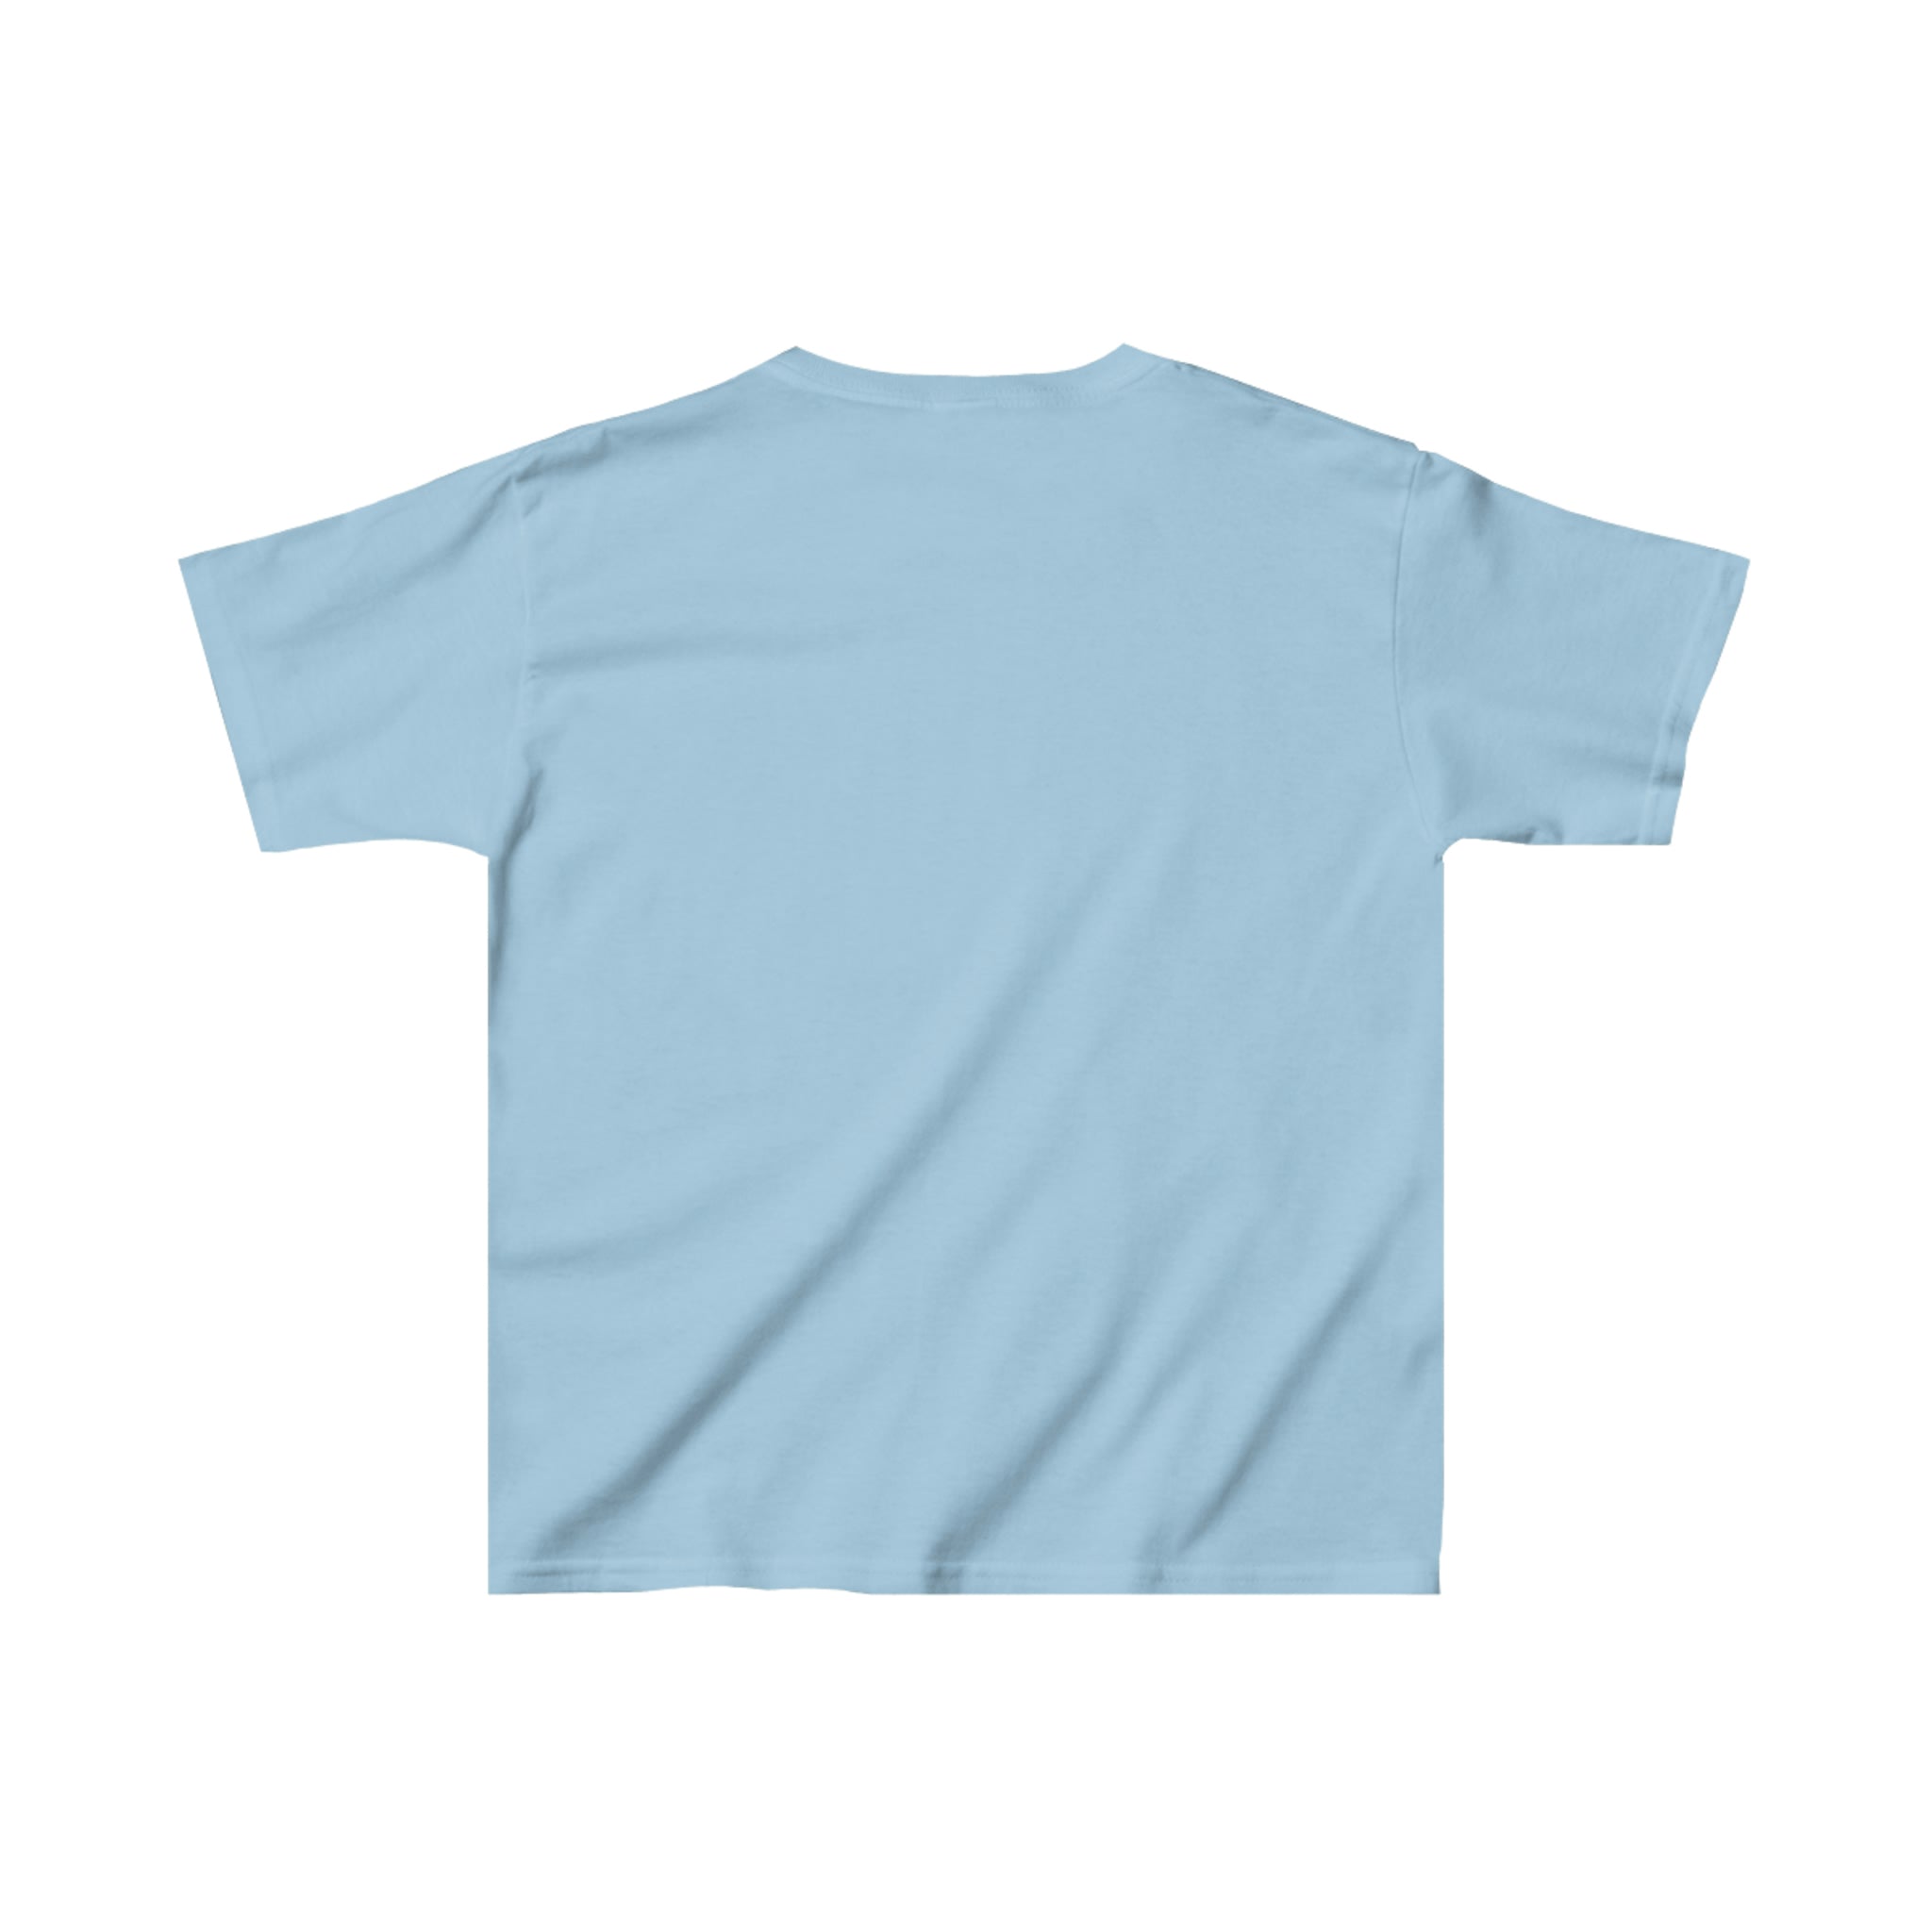 Girl's Novelty T-Shirts | Heavy Cotton Tee | Dewey Does Novelty Tees